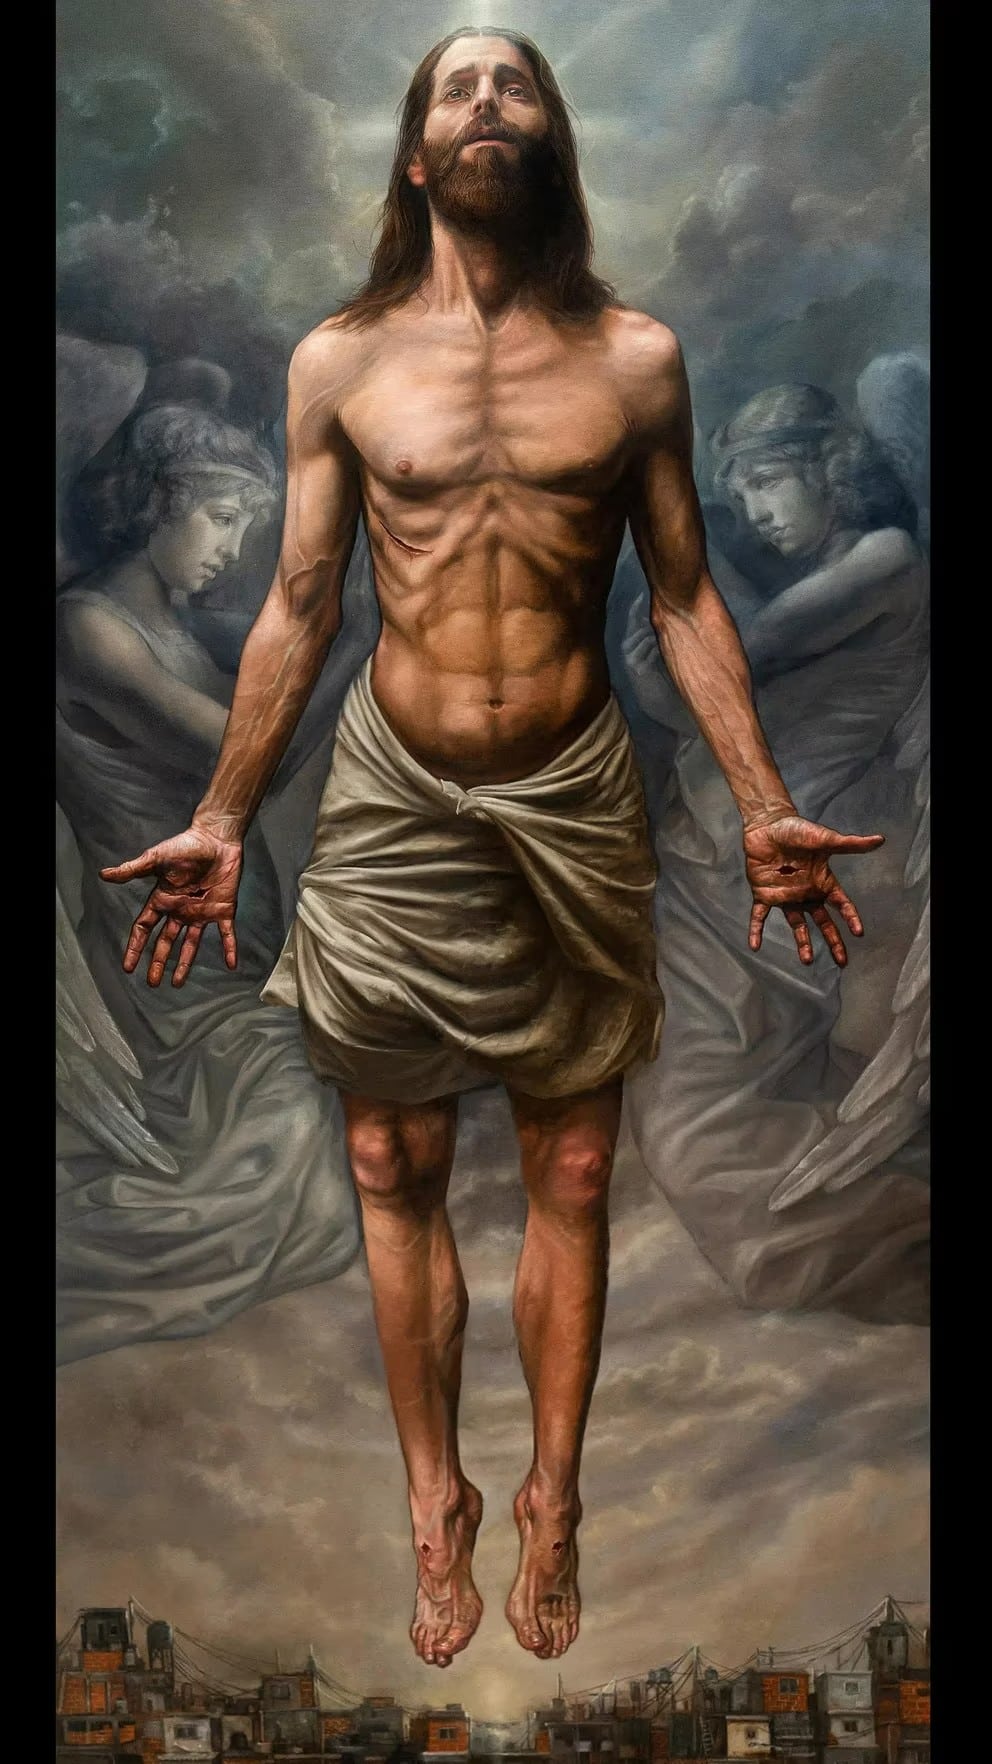 Pintura del Cristo Resucitado del artista plástico Ricardo Celma que sorprendió al Papa Francisco